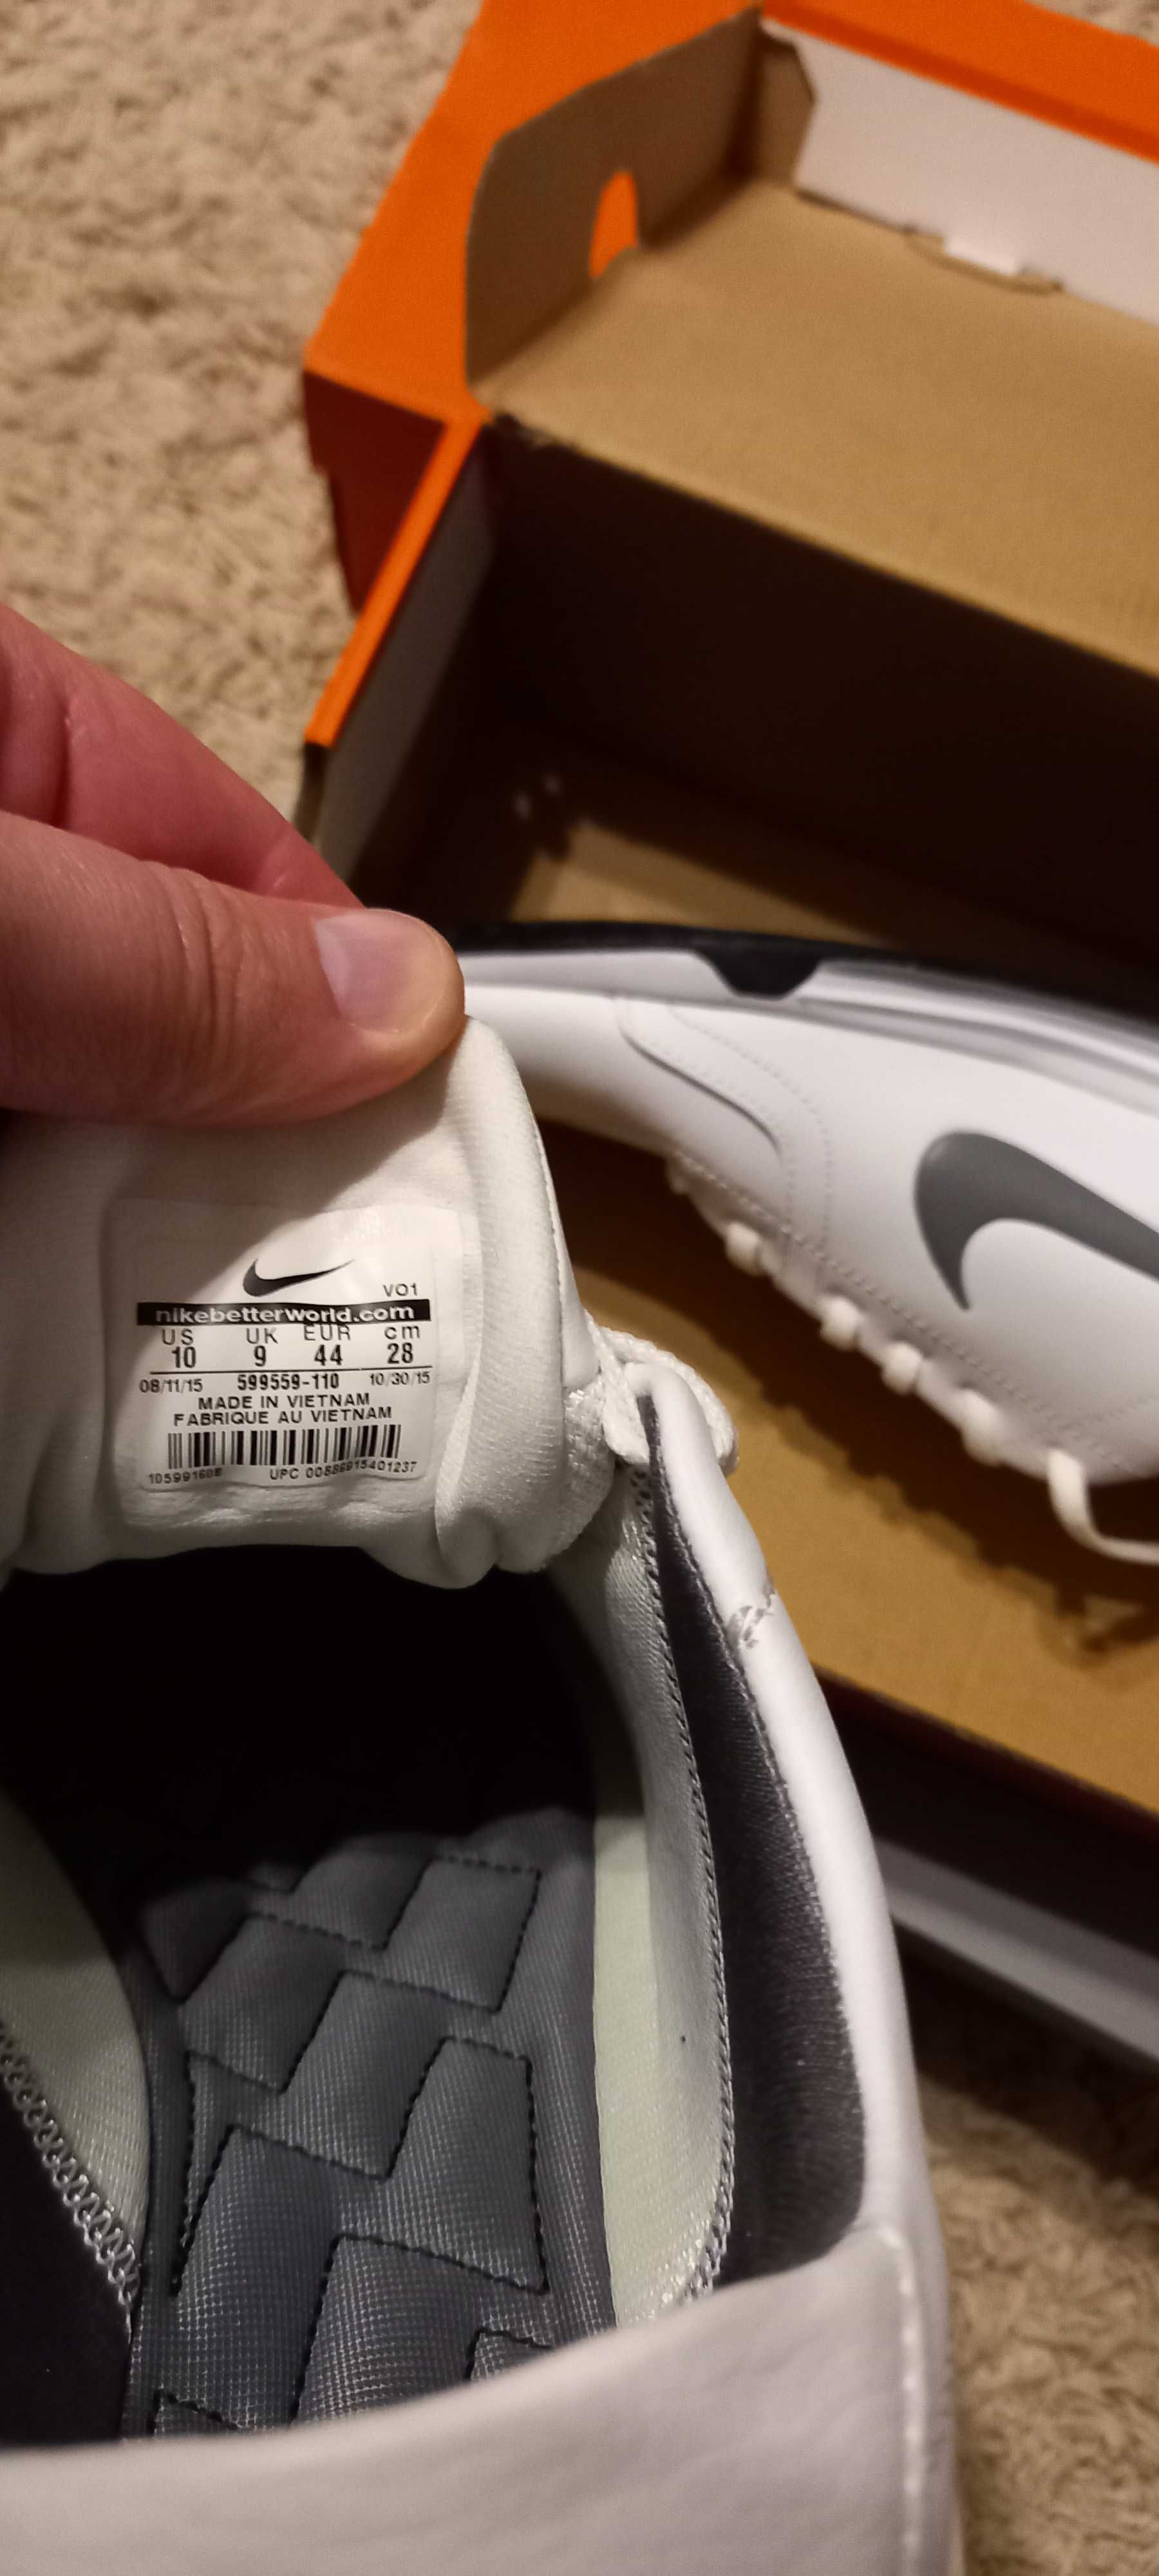 Vând adidasi Nike, originali